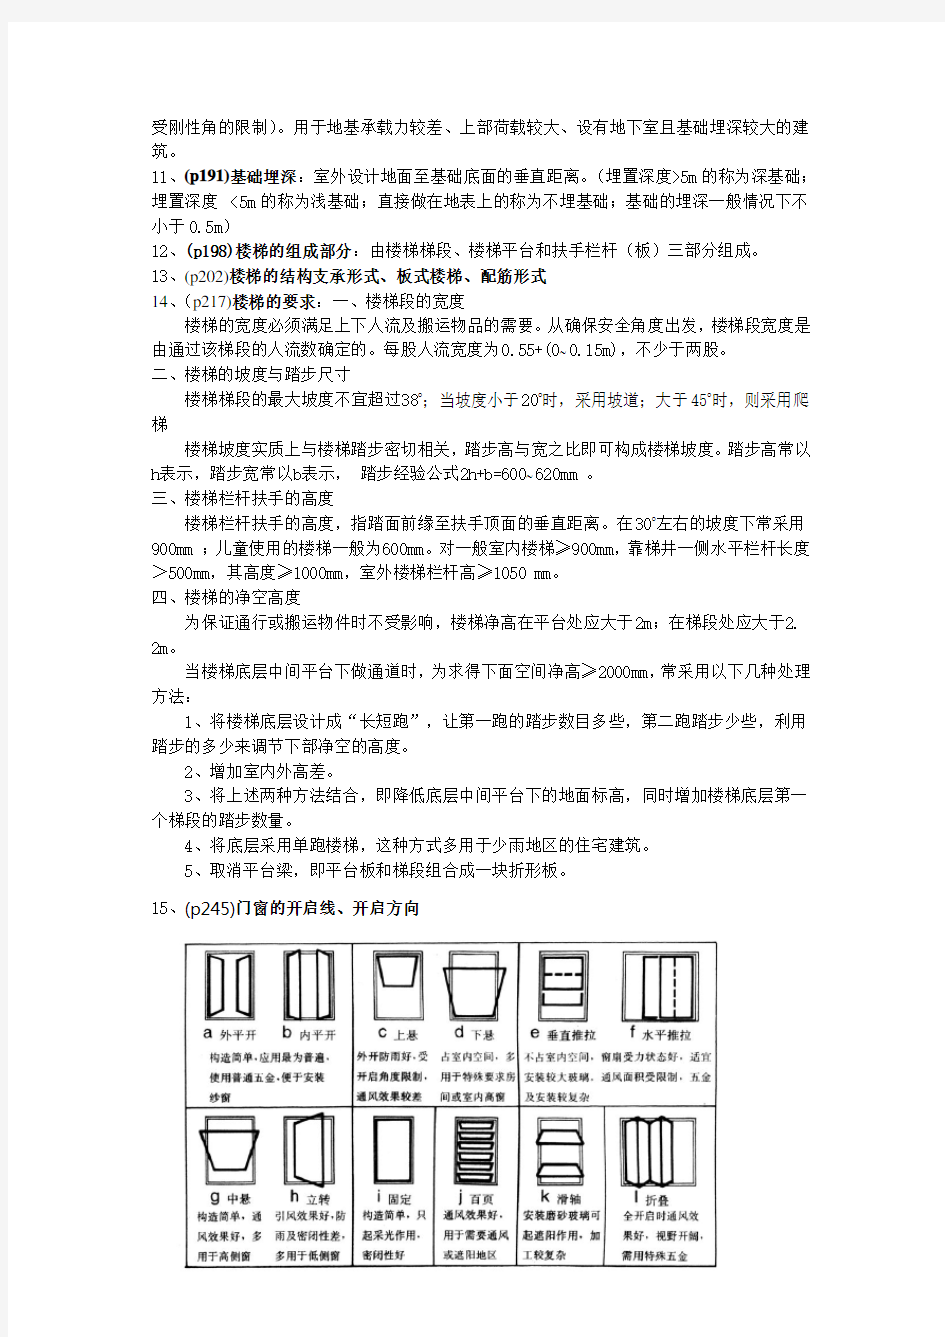 房屋建筑学 第四版 中国建筑工业出版社